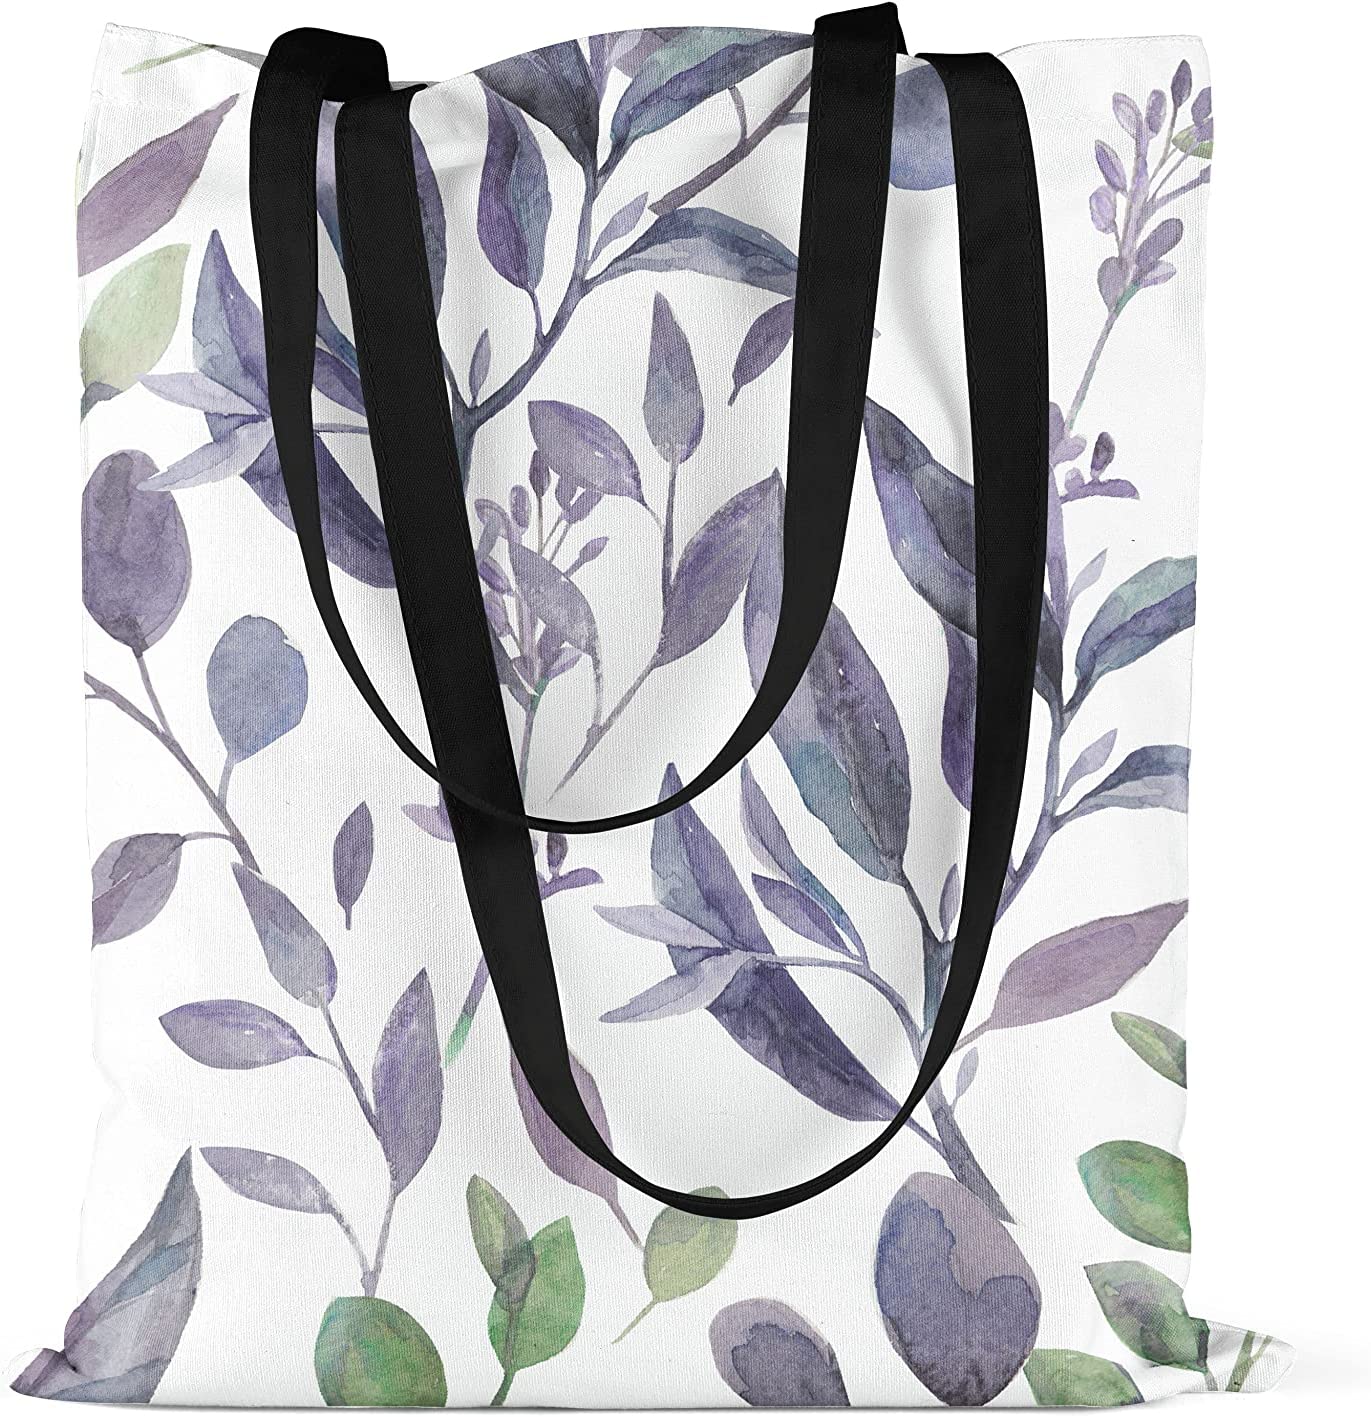 Bonamaison Blue/Purple Floral Design Printed Cream Tote Bag 48 x 55cm RRP £5.99 CLEARANCE XL £3.99